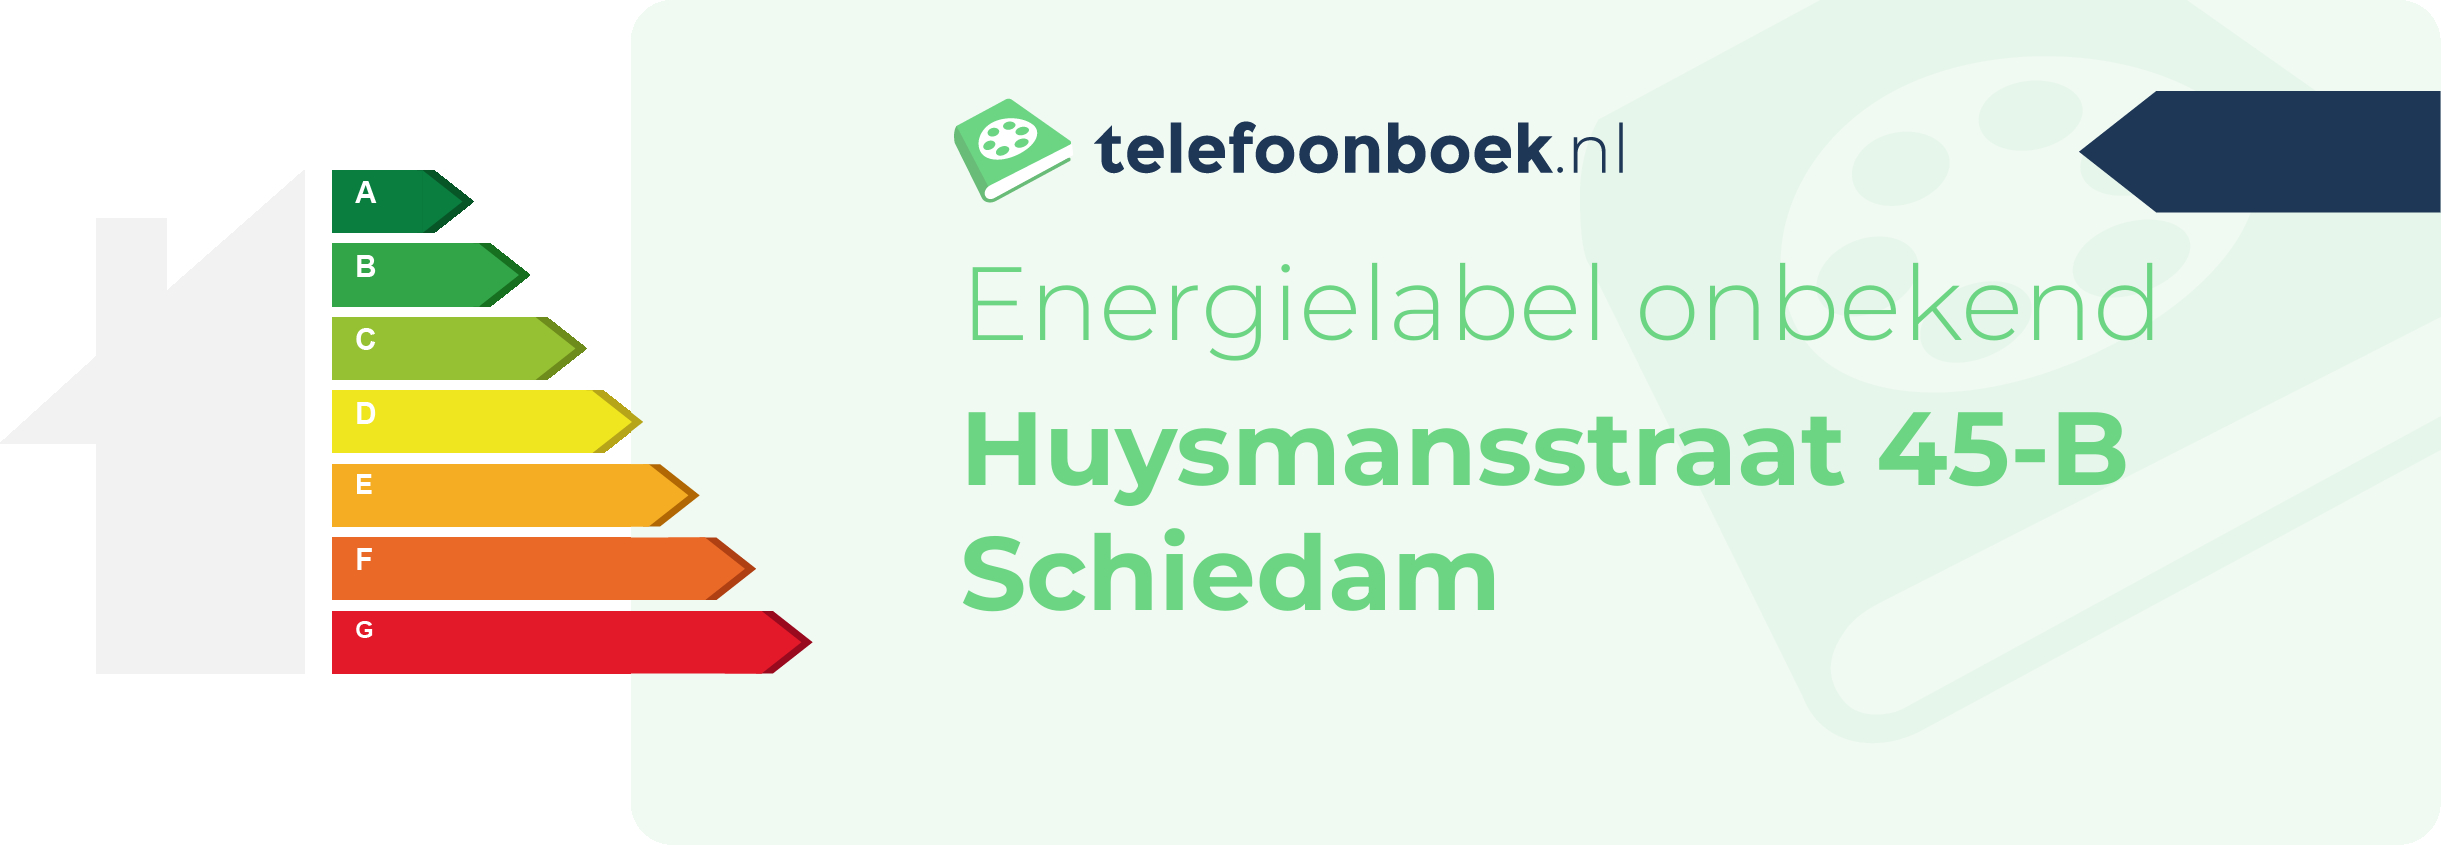 Energielabel Huysmansstraat 45-B Schiedam